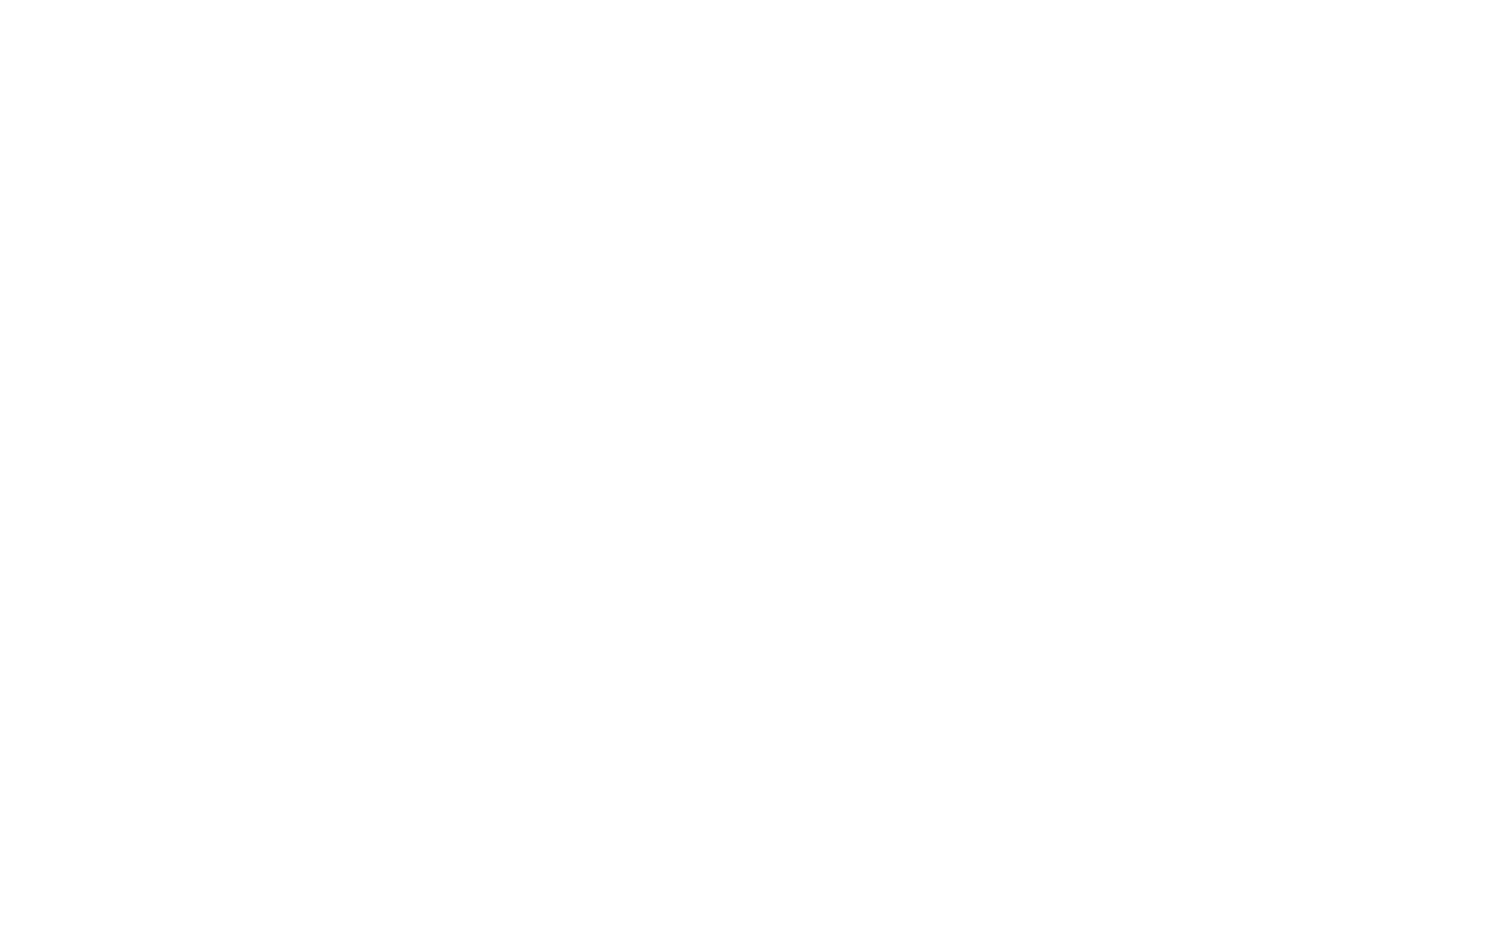 Adam Sheehan Photography